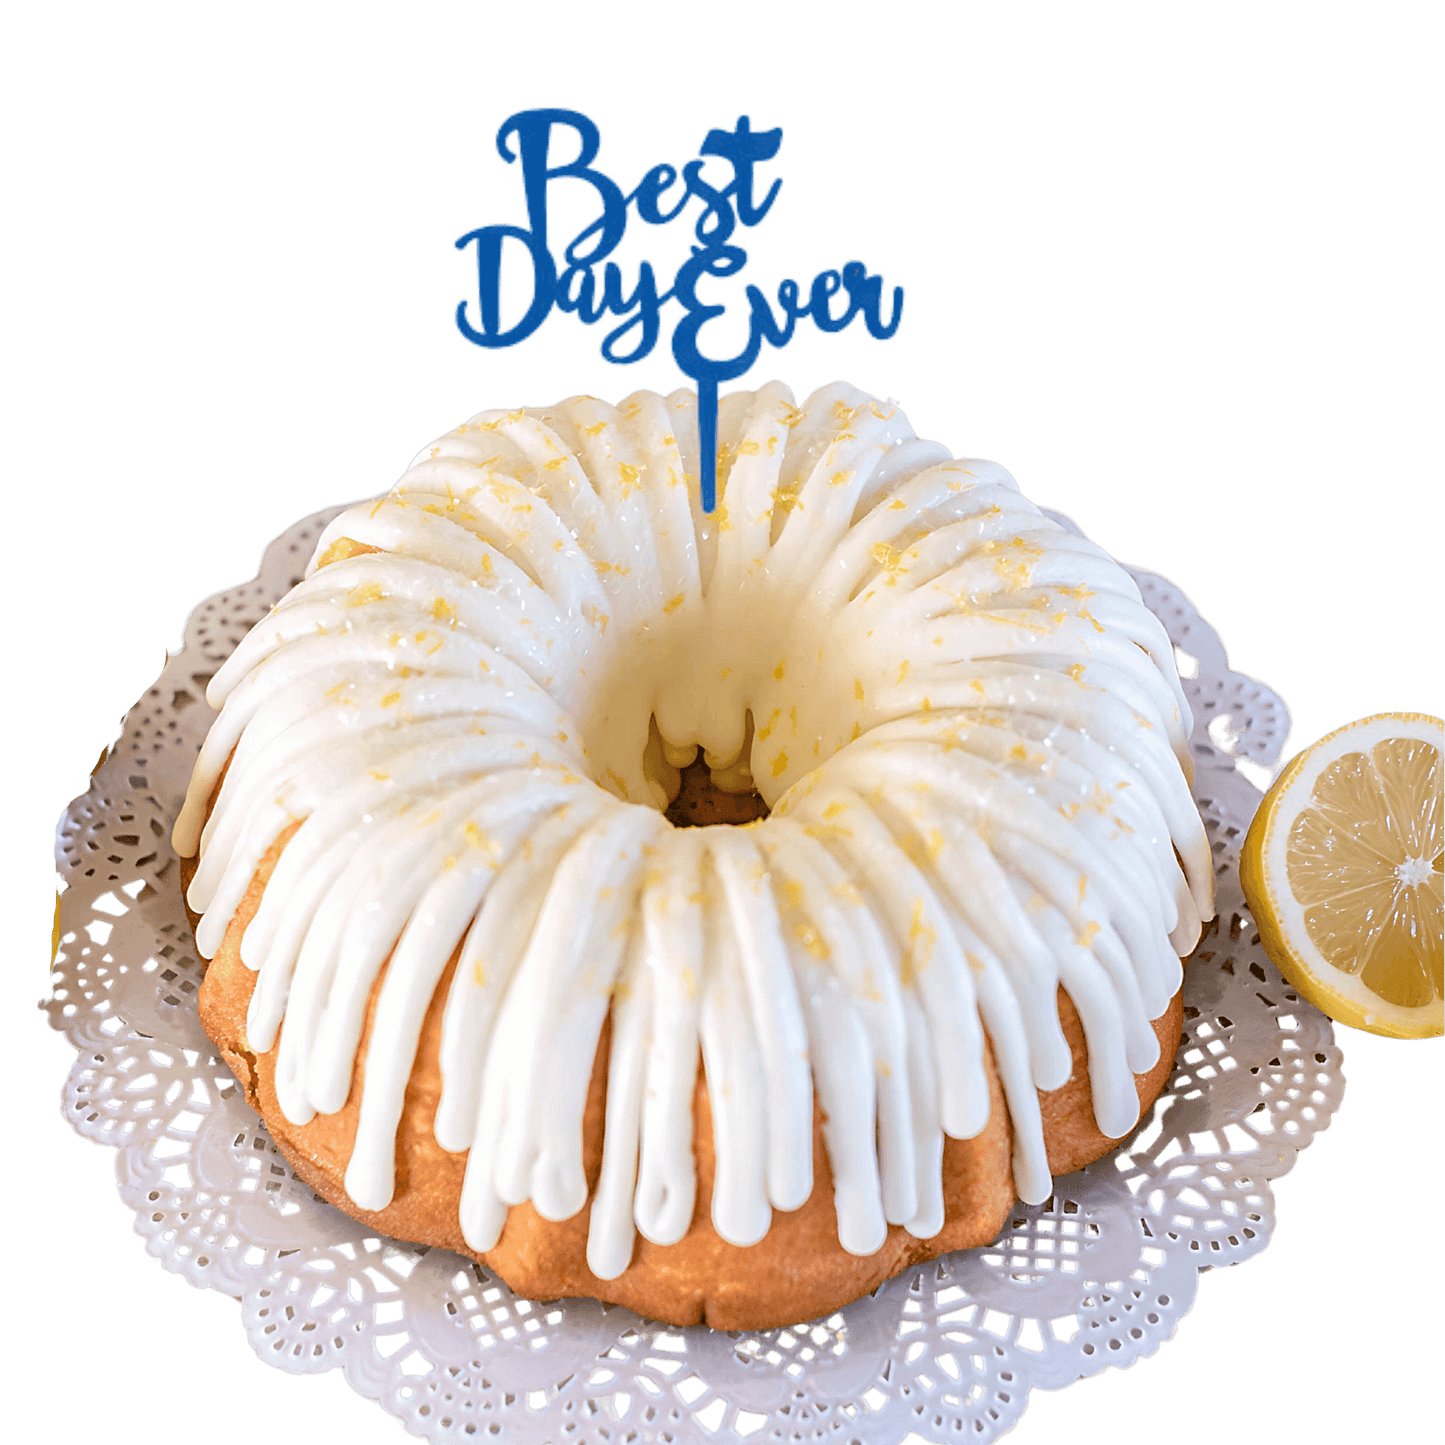 Lemon Squeeze Blue "BEST DAY EVER" Candle Holder Bundt Cake - Bundt Cakes